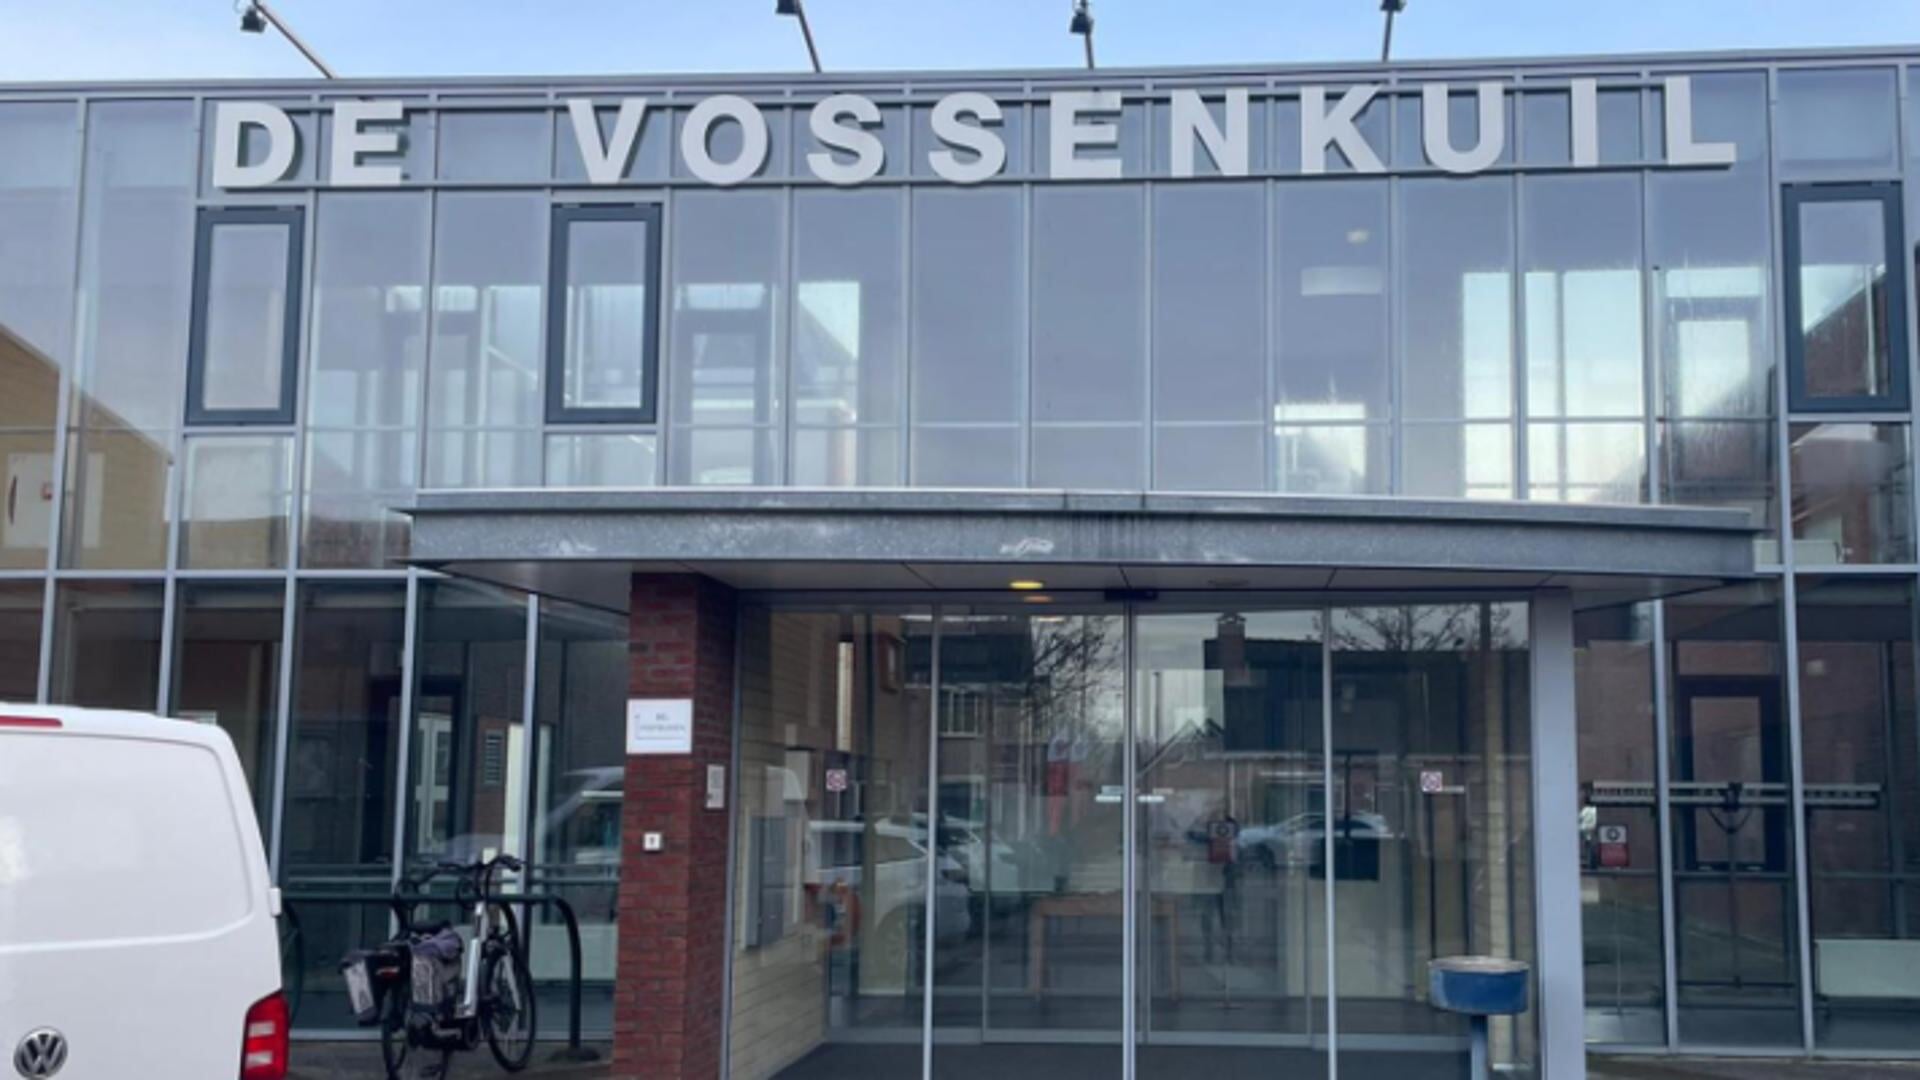 De bieb van Oud-Vossemeer zit gevestigd in De Vossenkuil.